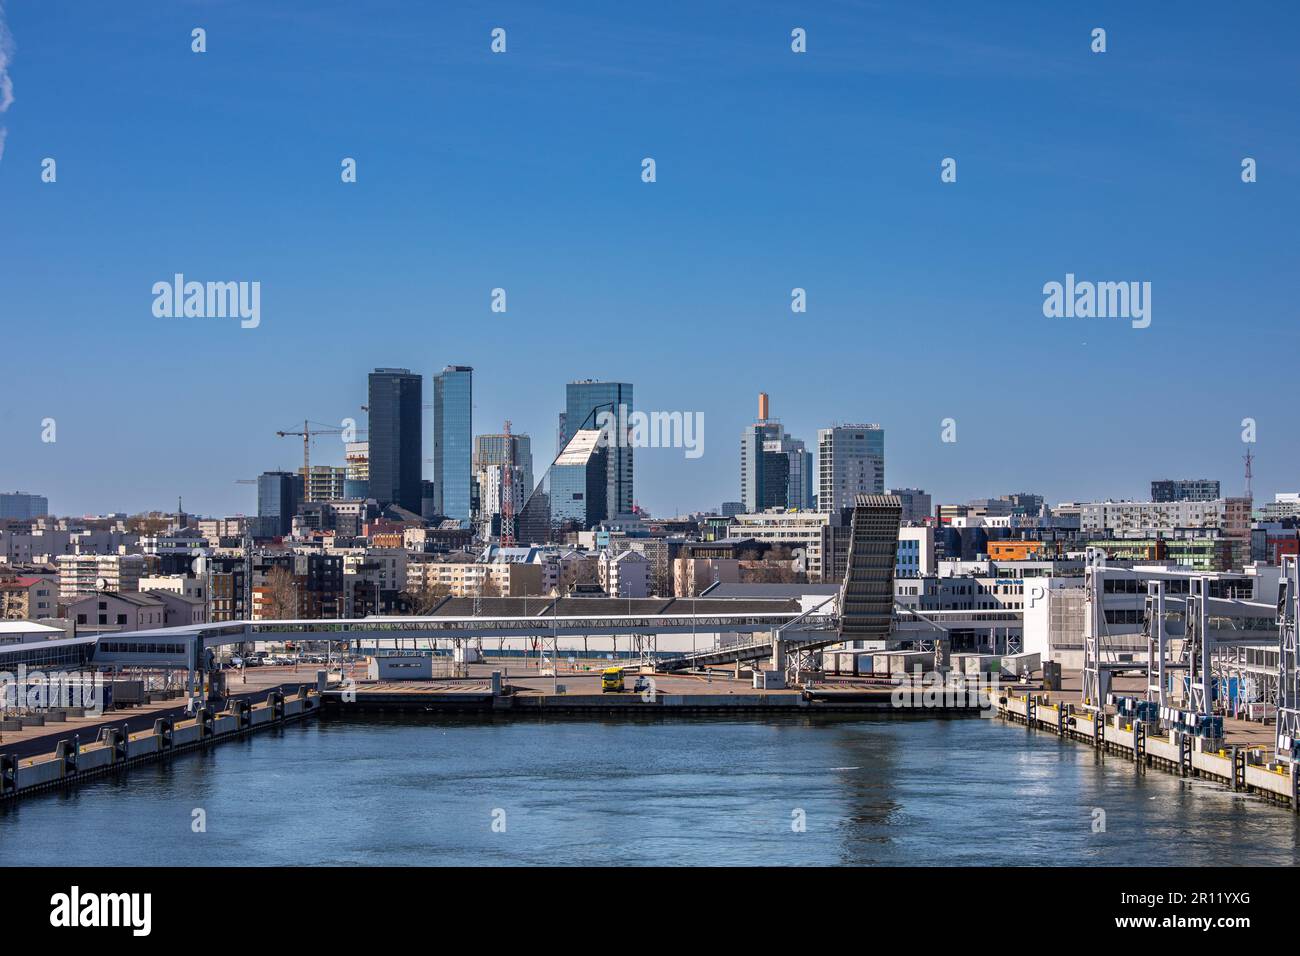 Bacino del porto passeggeri sullo sfondo di alti edifici e cielo blu chiaro a Tallinn, Estonia Foto Stock